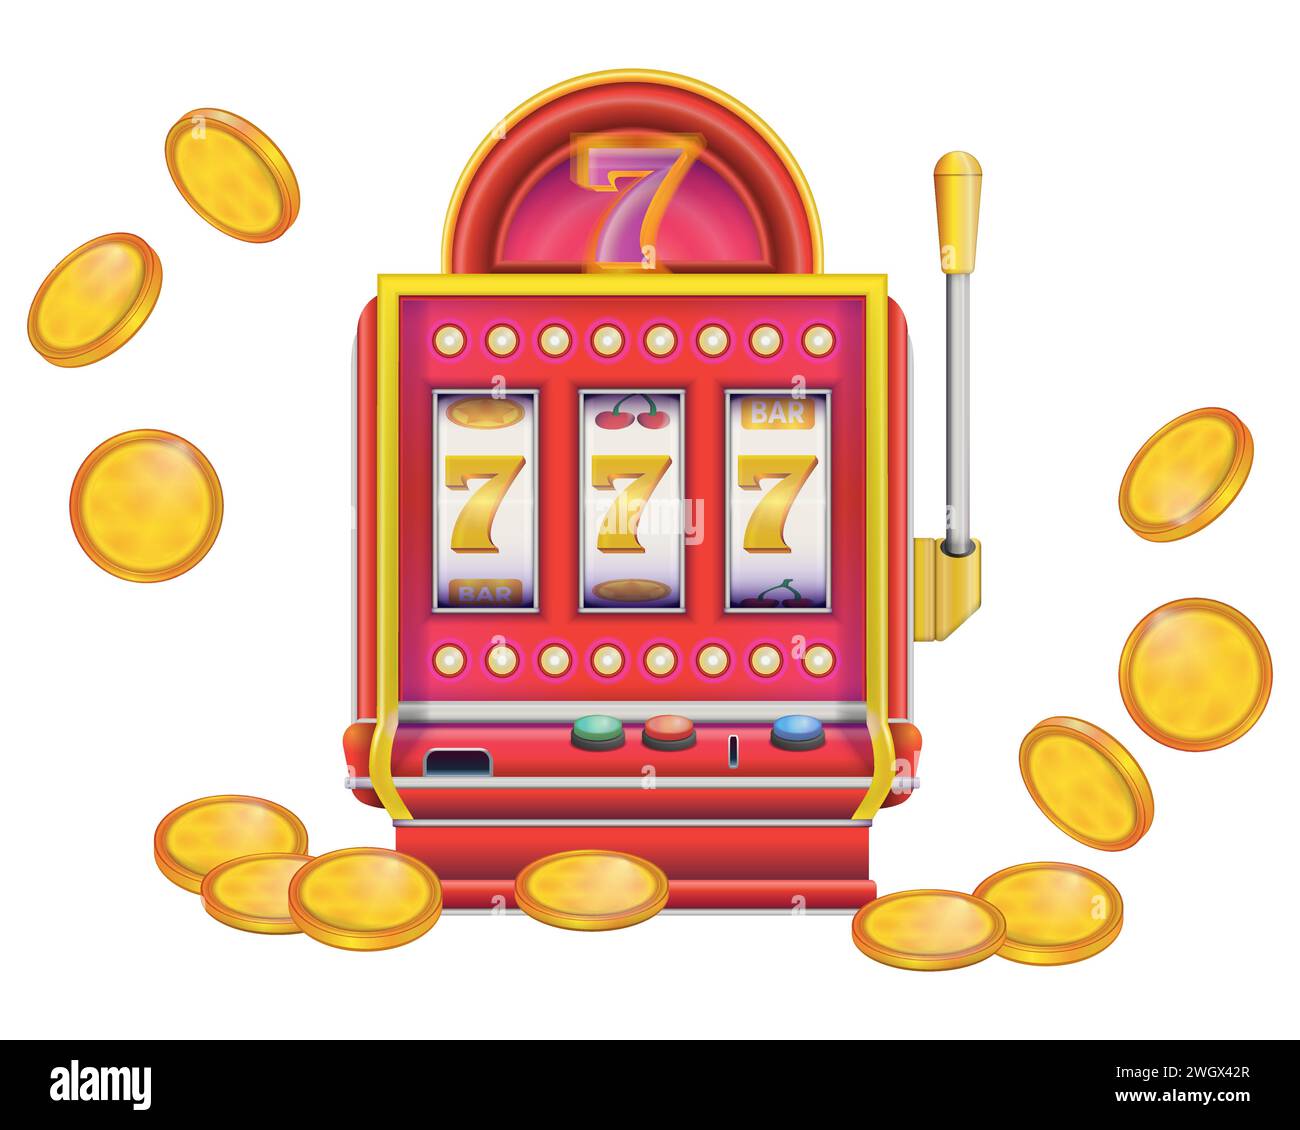 Spielautomat im realistischen Stil mit Münzen. Lucky Sivens 777. Casino Las Vegas Jackpot. Bunte Vektorillustration isoliert auf weißem Hintergrund. Stock Vektor